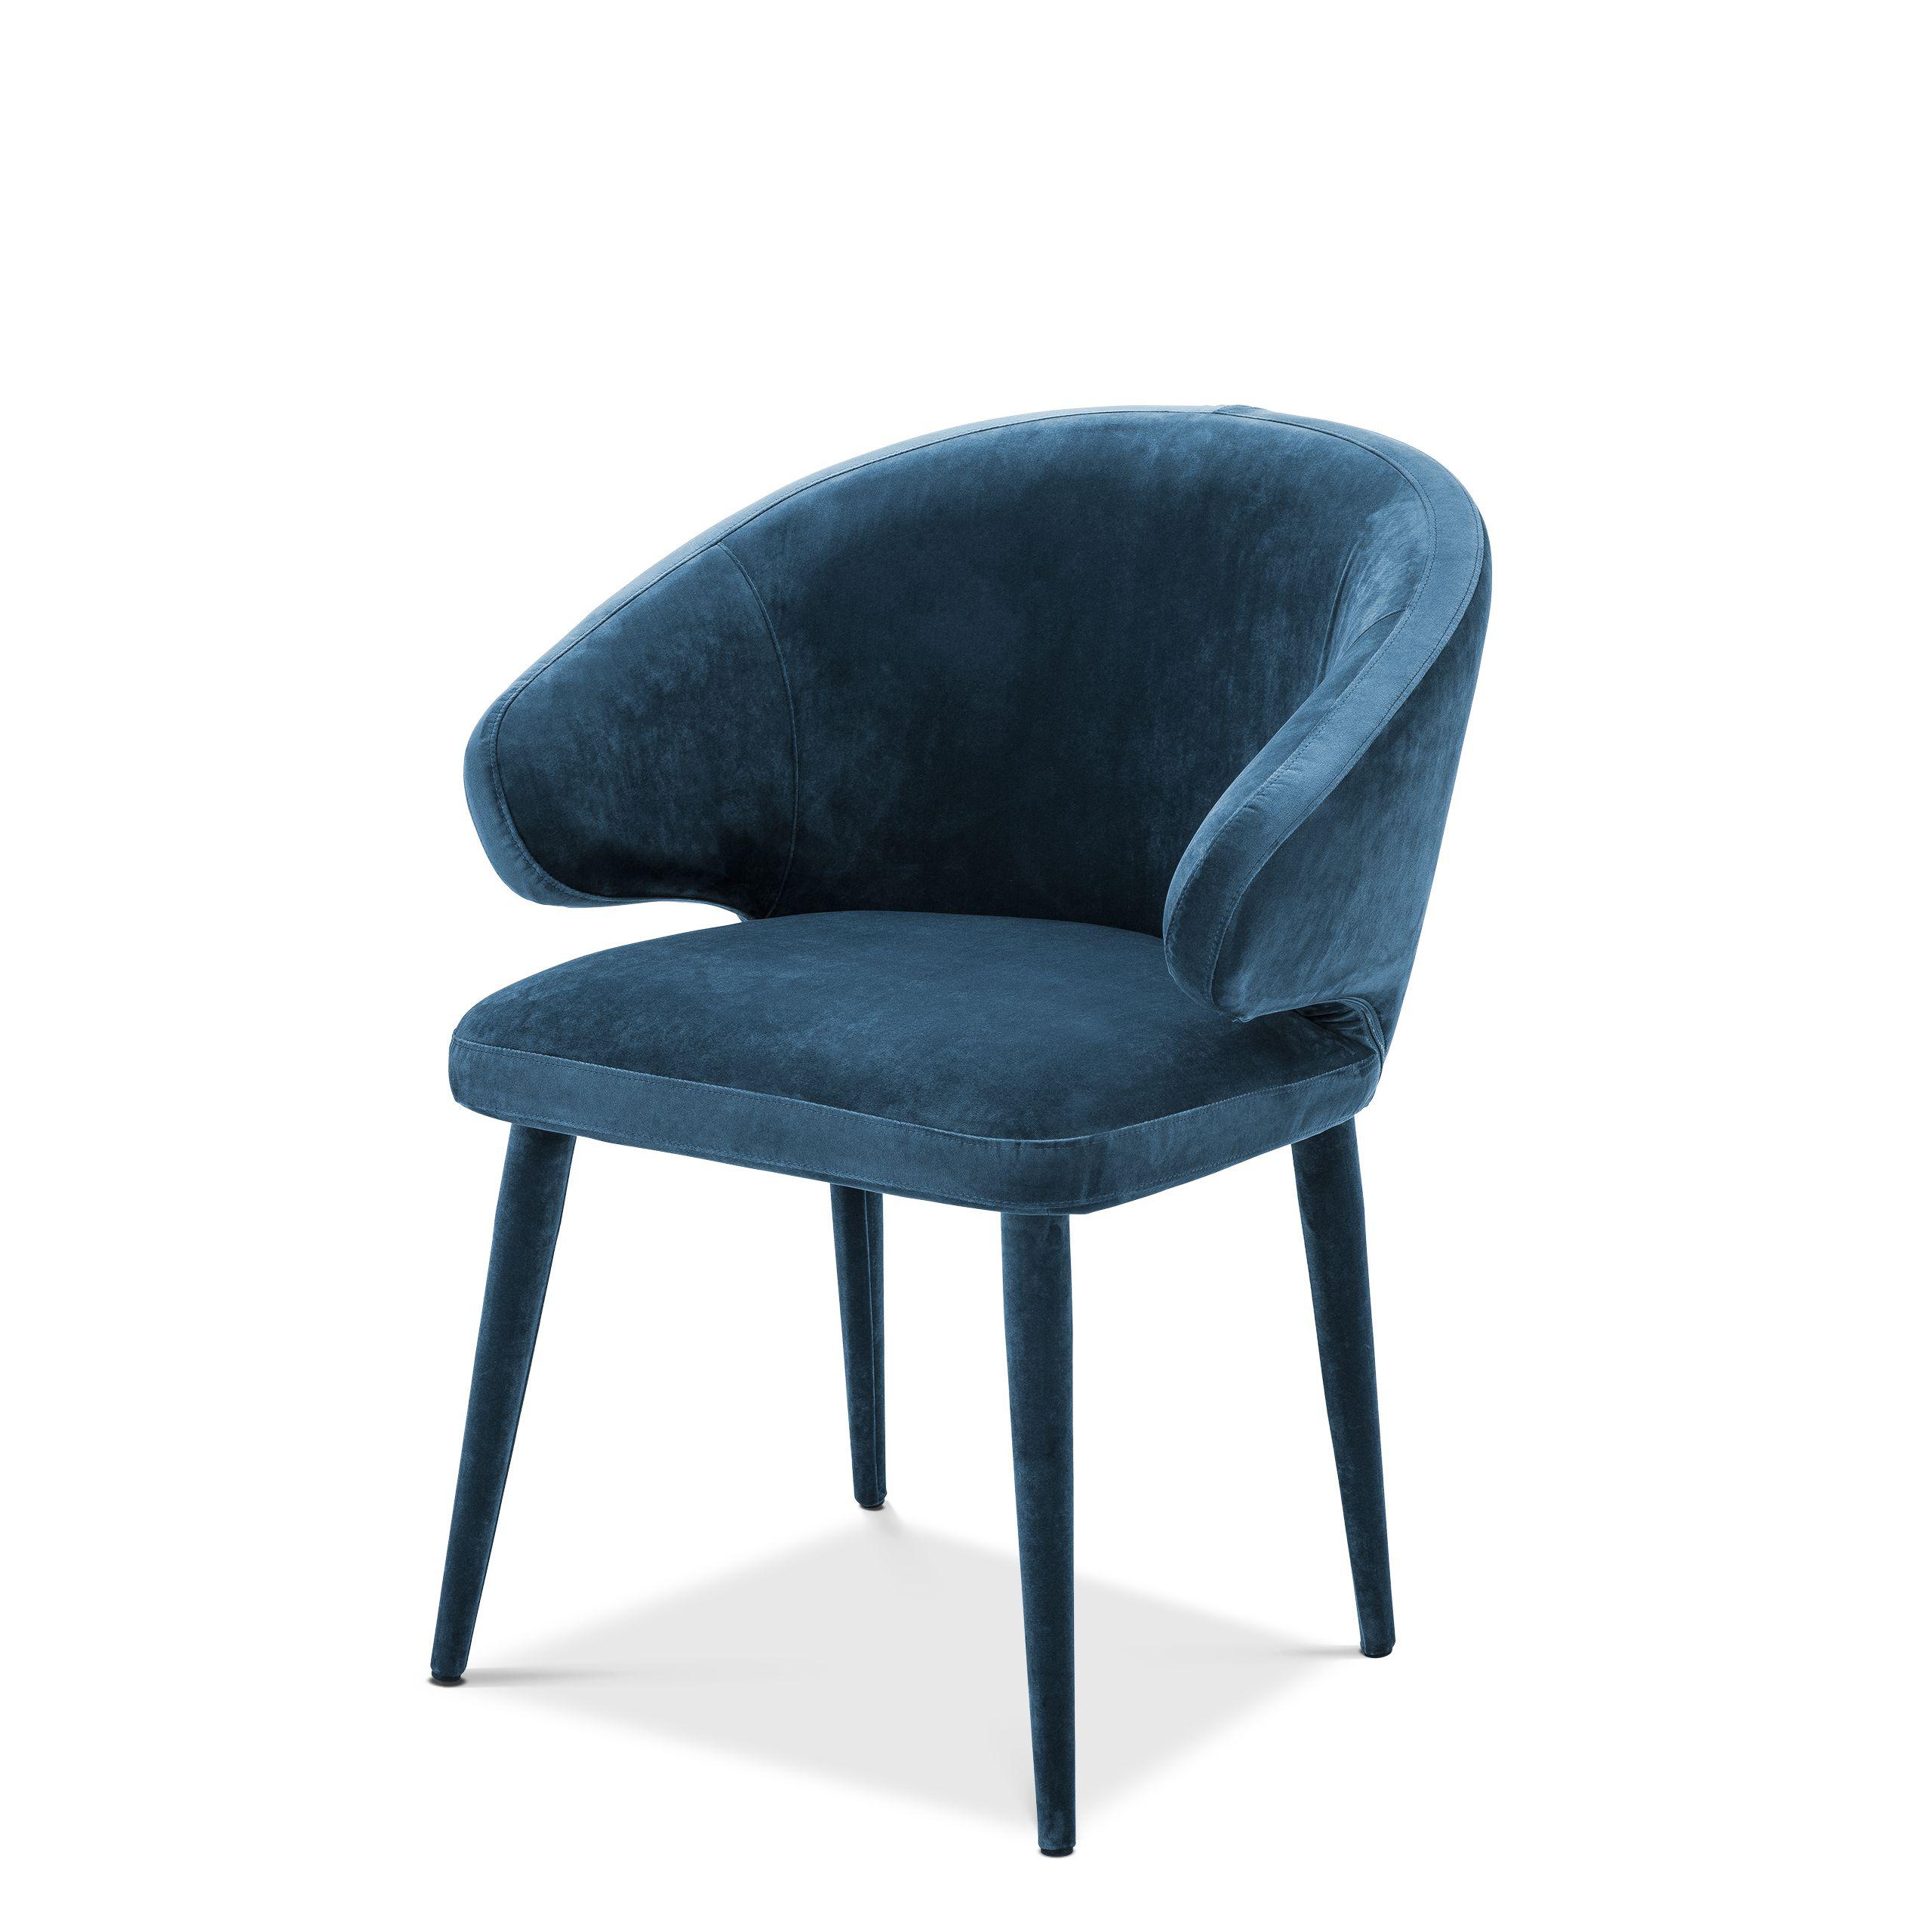 Купить Стул без подлокотника Dining Chair Cardinale в интернет-магазине roooms.ru